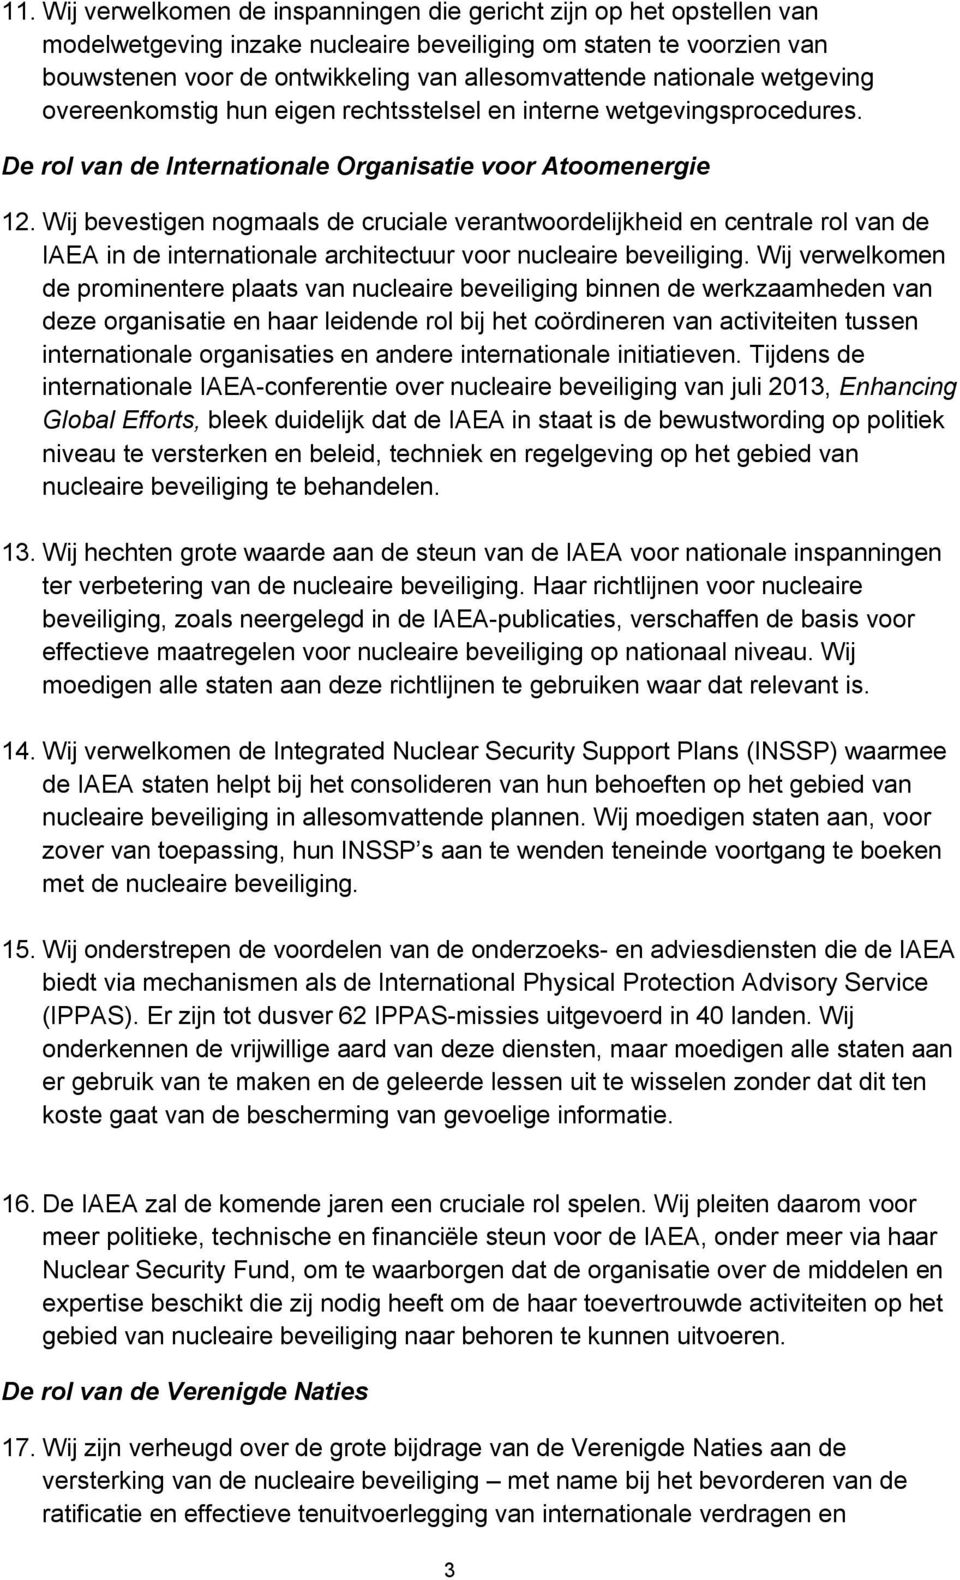 Wij bevestigen nogmaals de cruciale verantwoordelijkheid en centrale rol van de IAEA in de internationale architectuur voor nucleaire beveiliging.